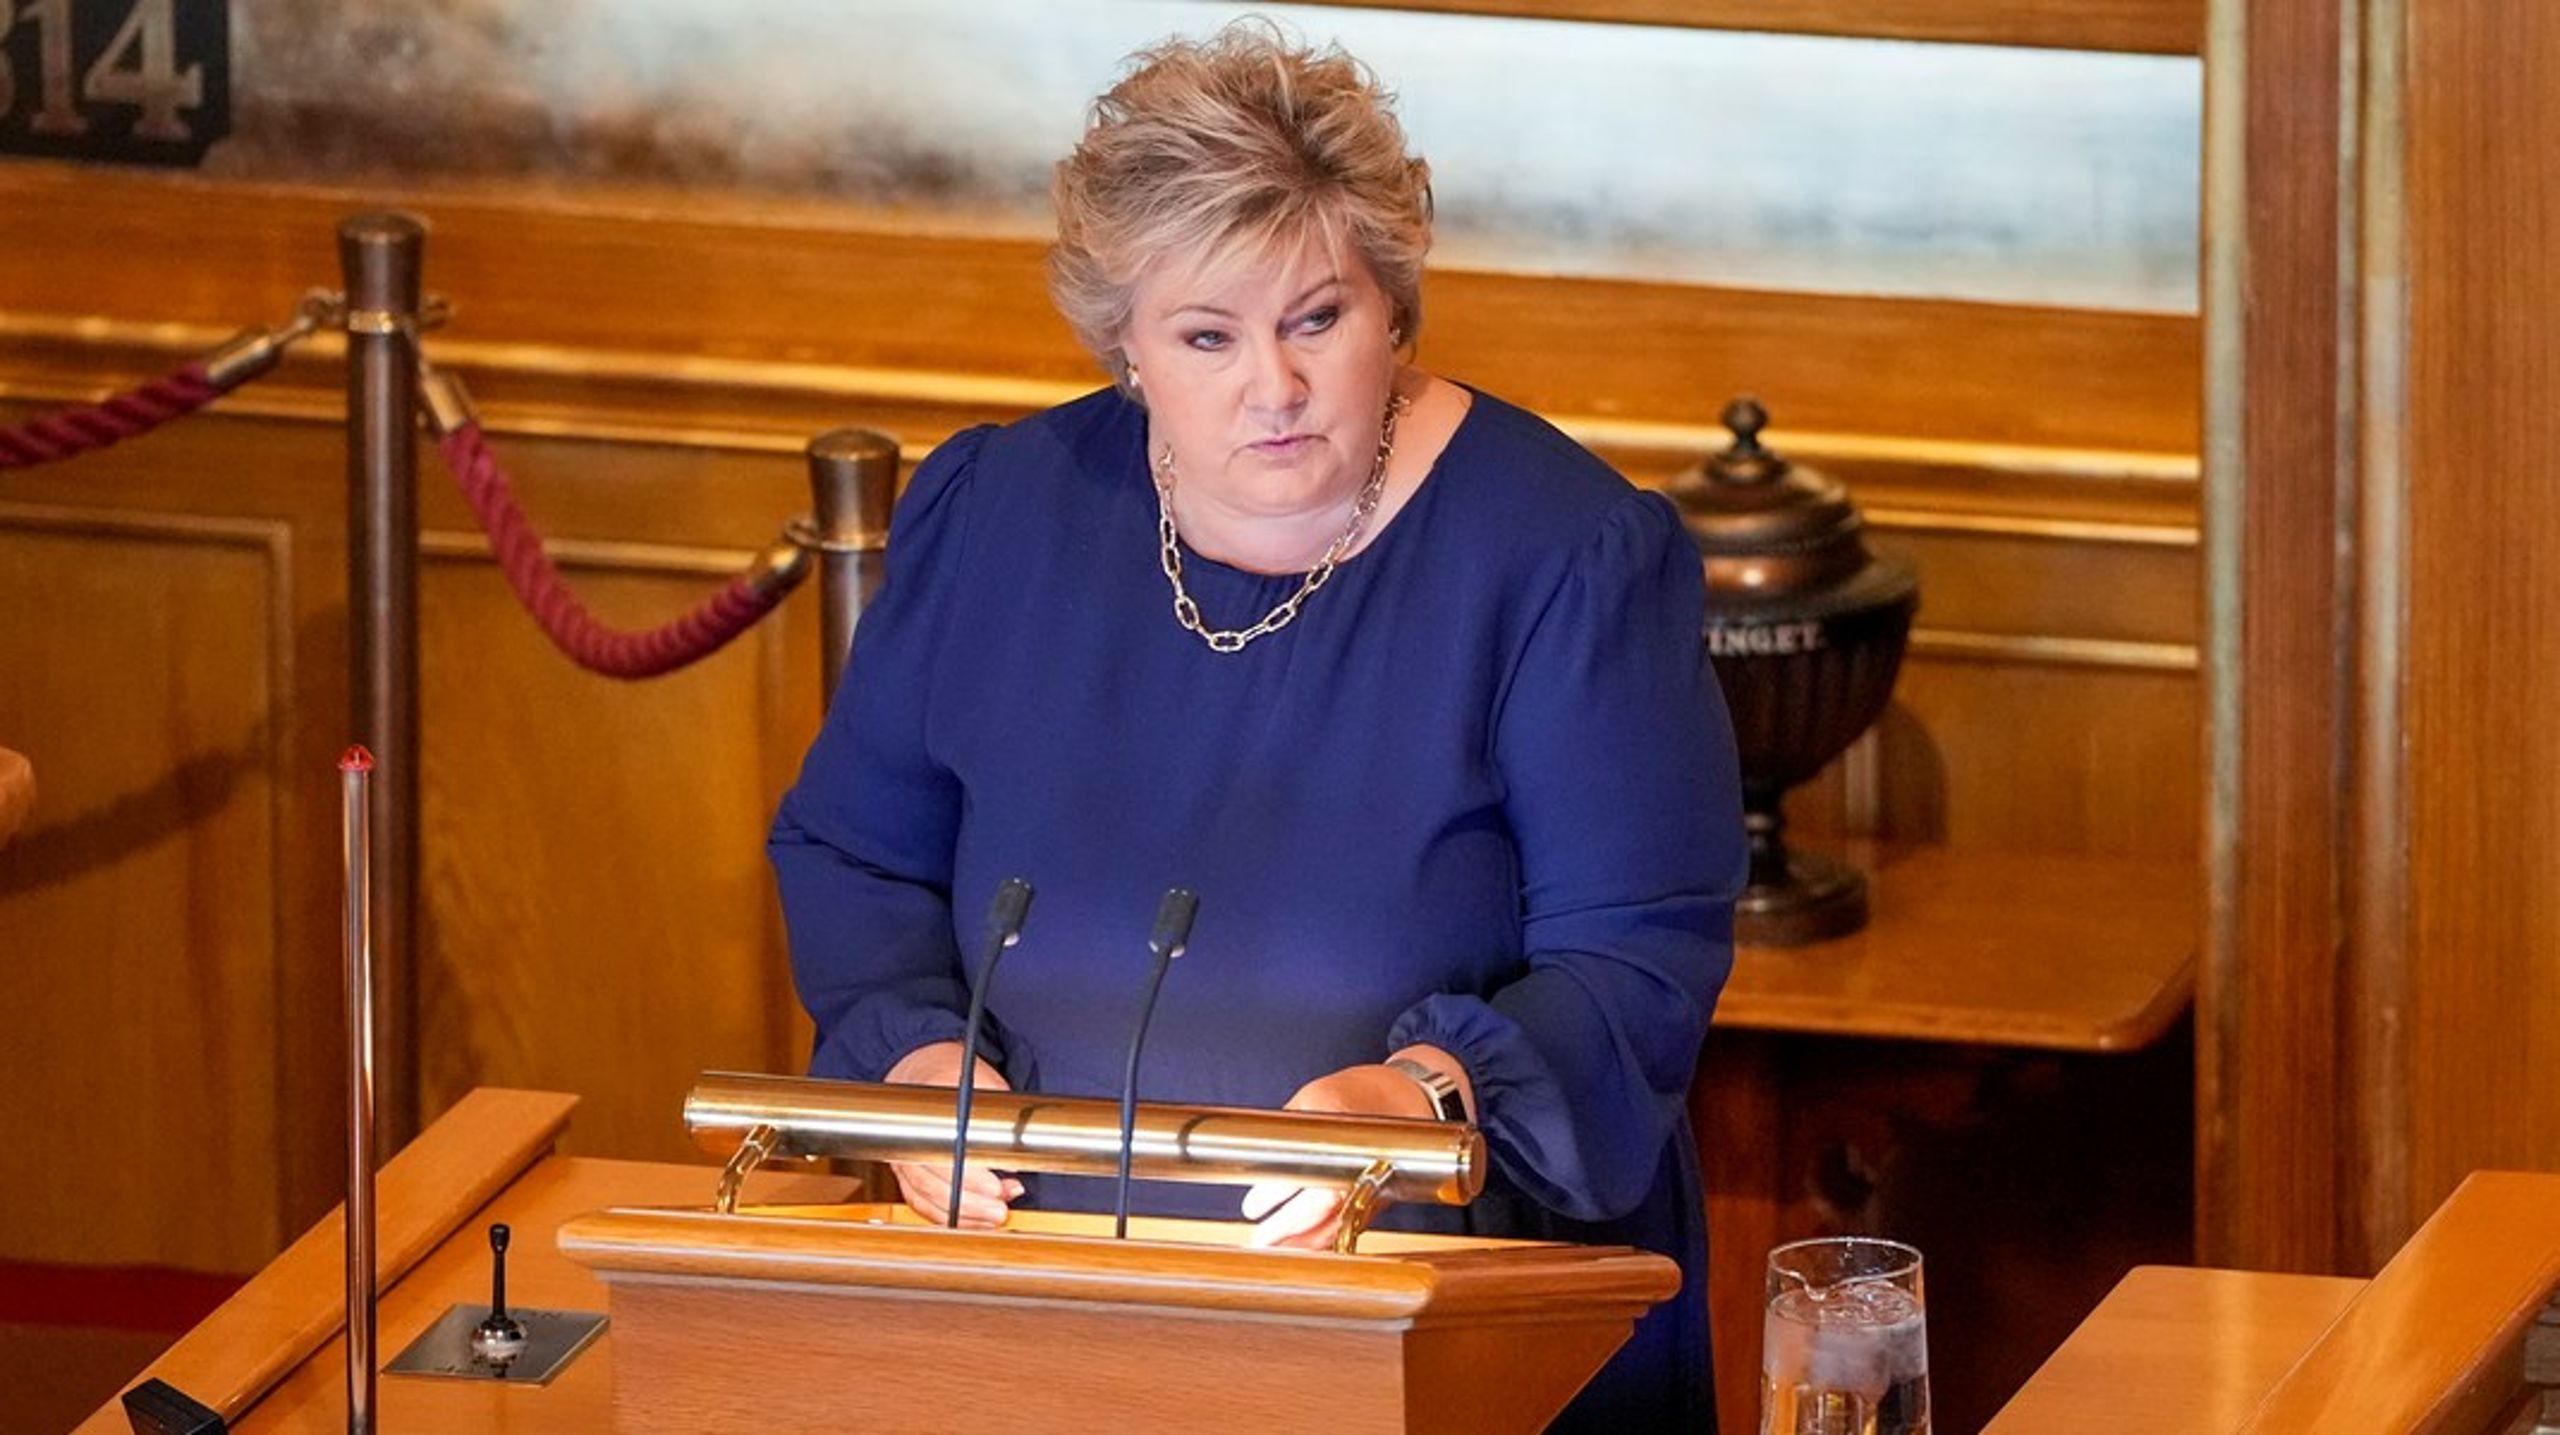 Høyre-leder Erna Solberg varslet en storsatsing på sol da hun talte til Høyres stortingsgruppe i august. 19. september fremmet Høyre ni forslag for å få fart på solkraftutbyggingen i Norge i møte med energikrisen.